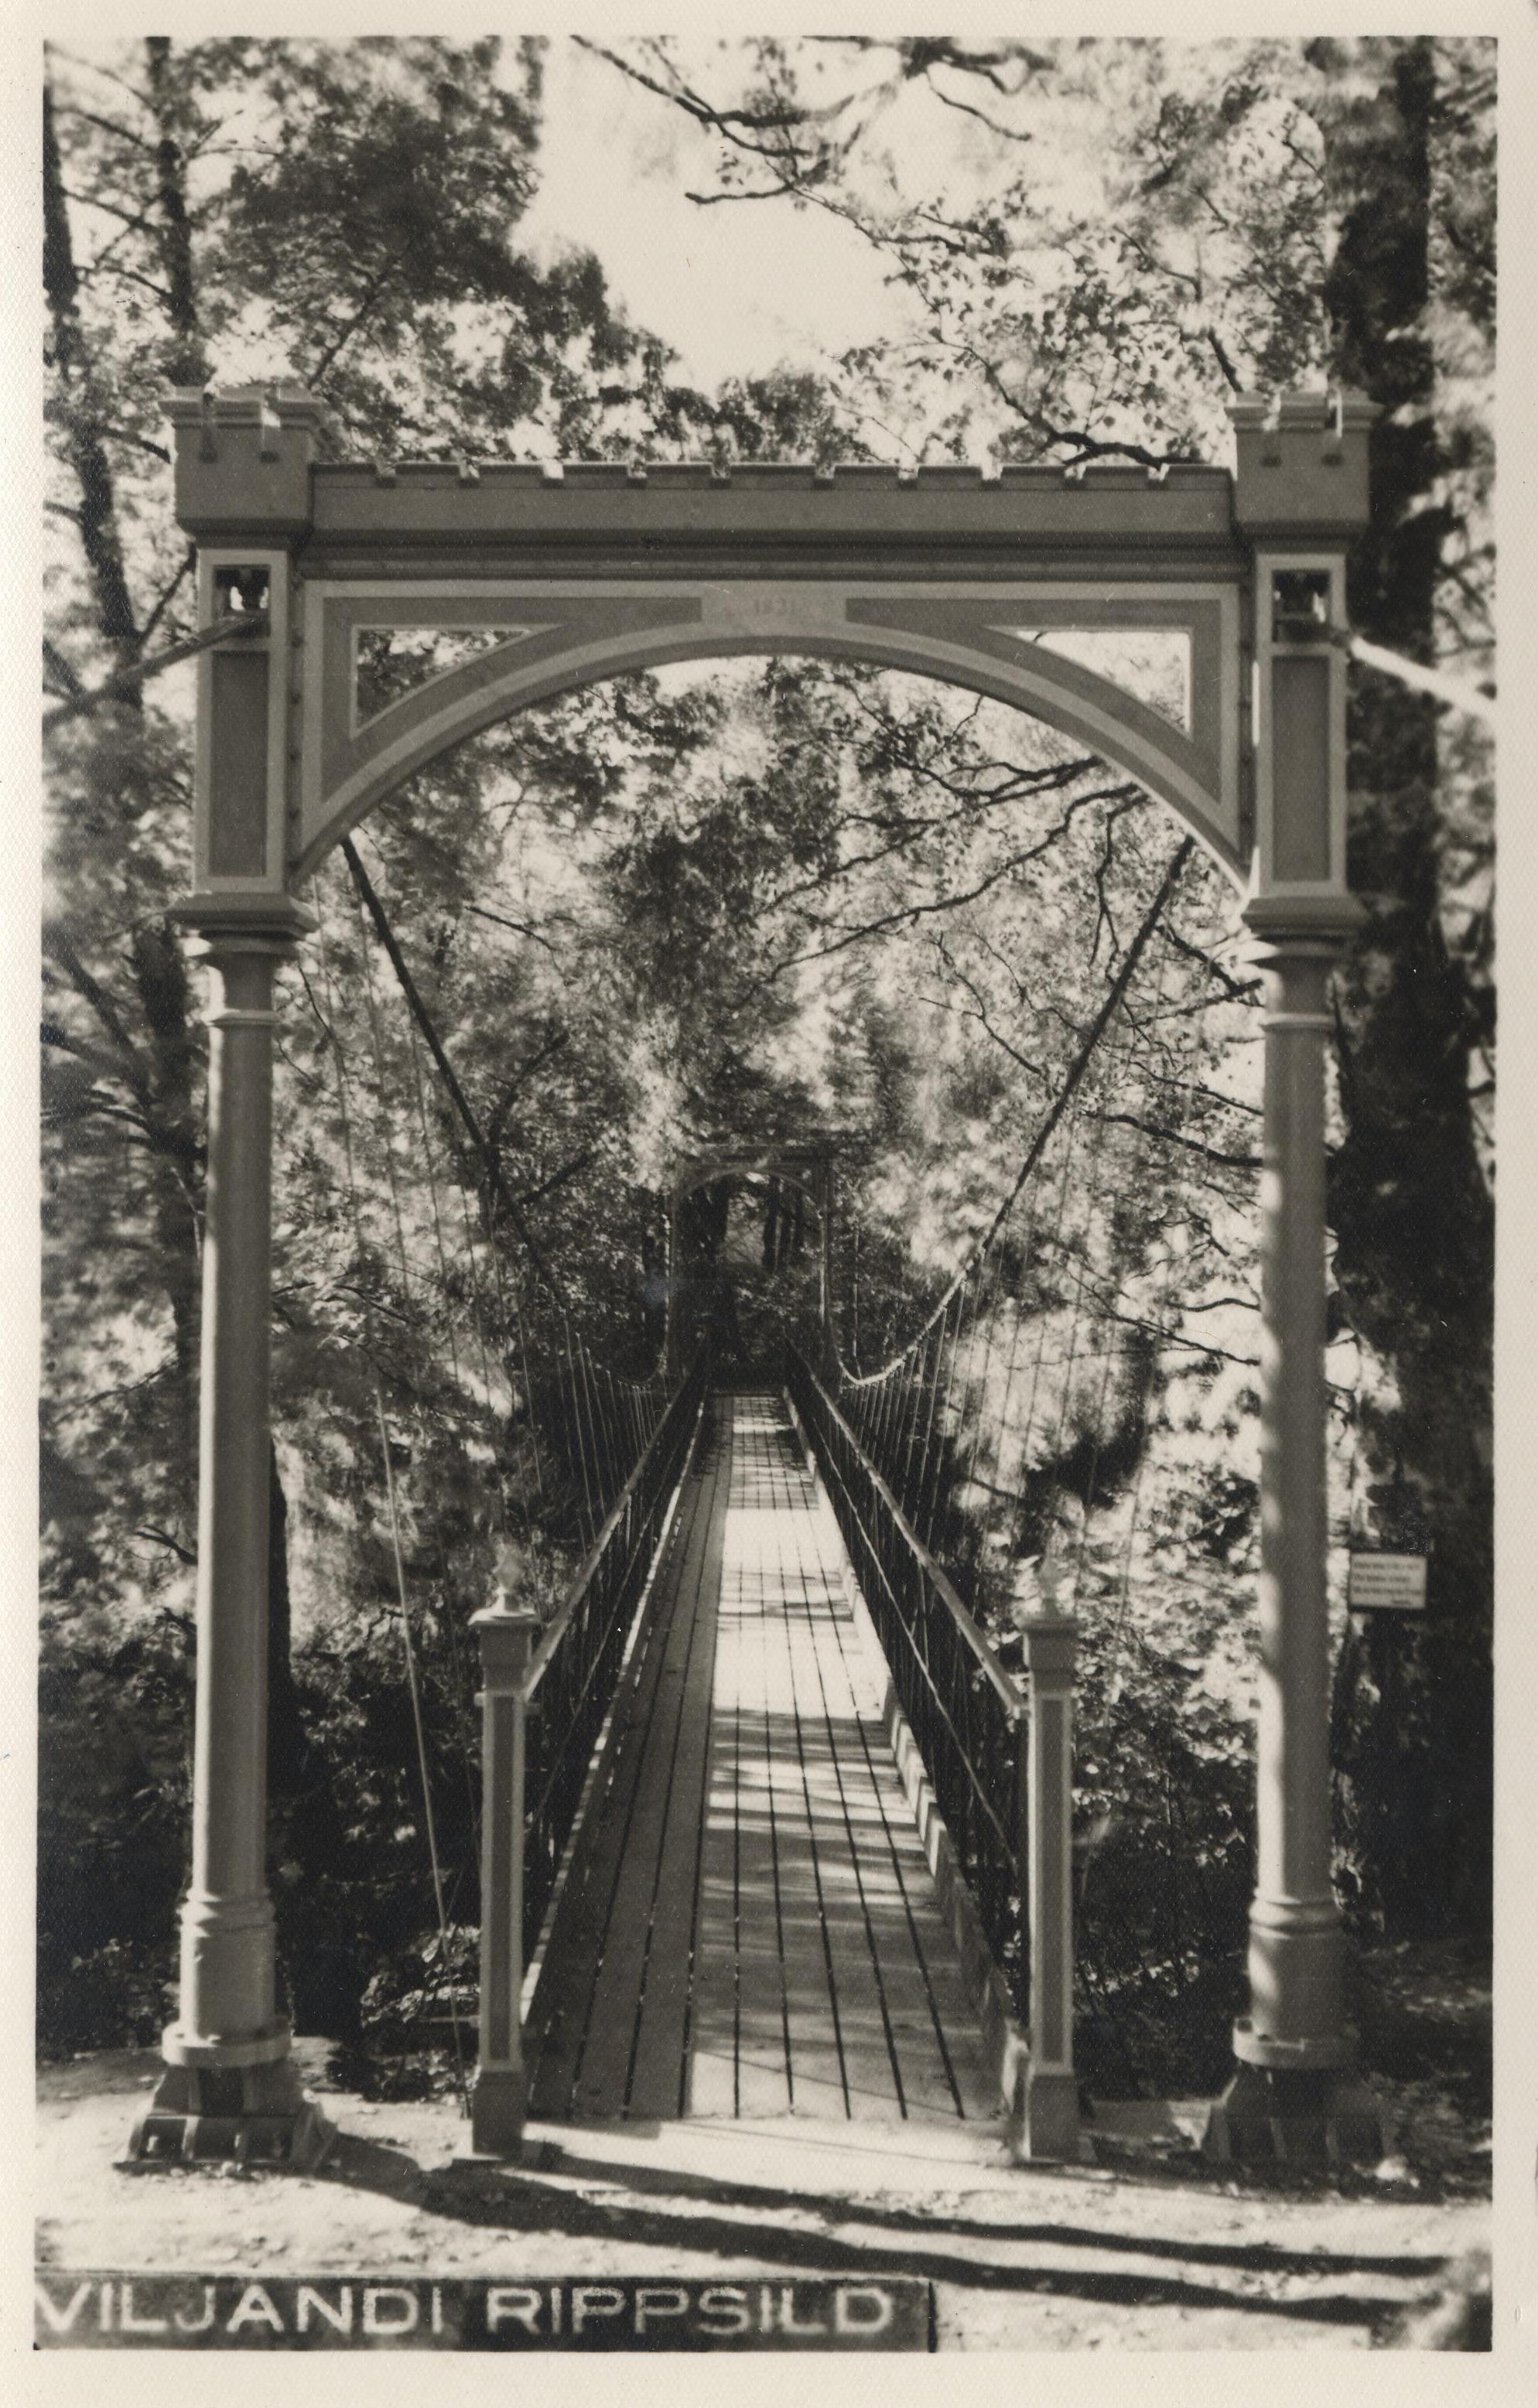 Viljandi Rip Bridge